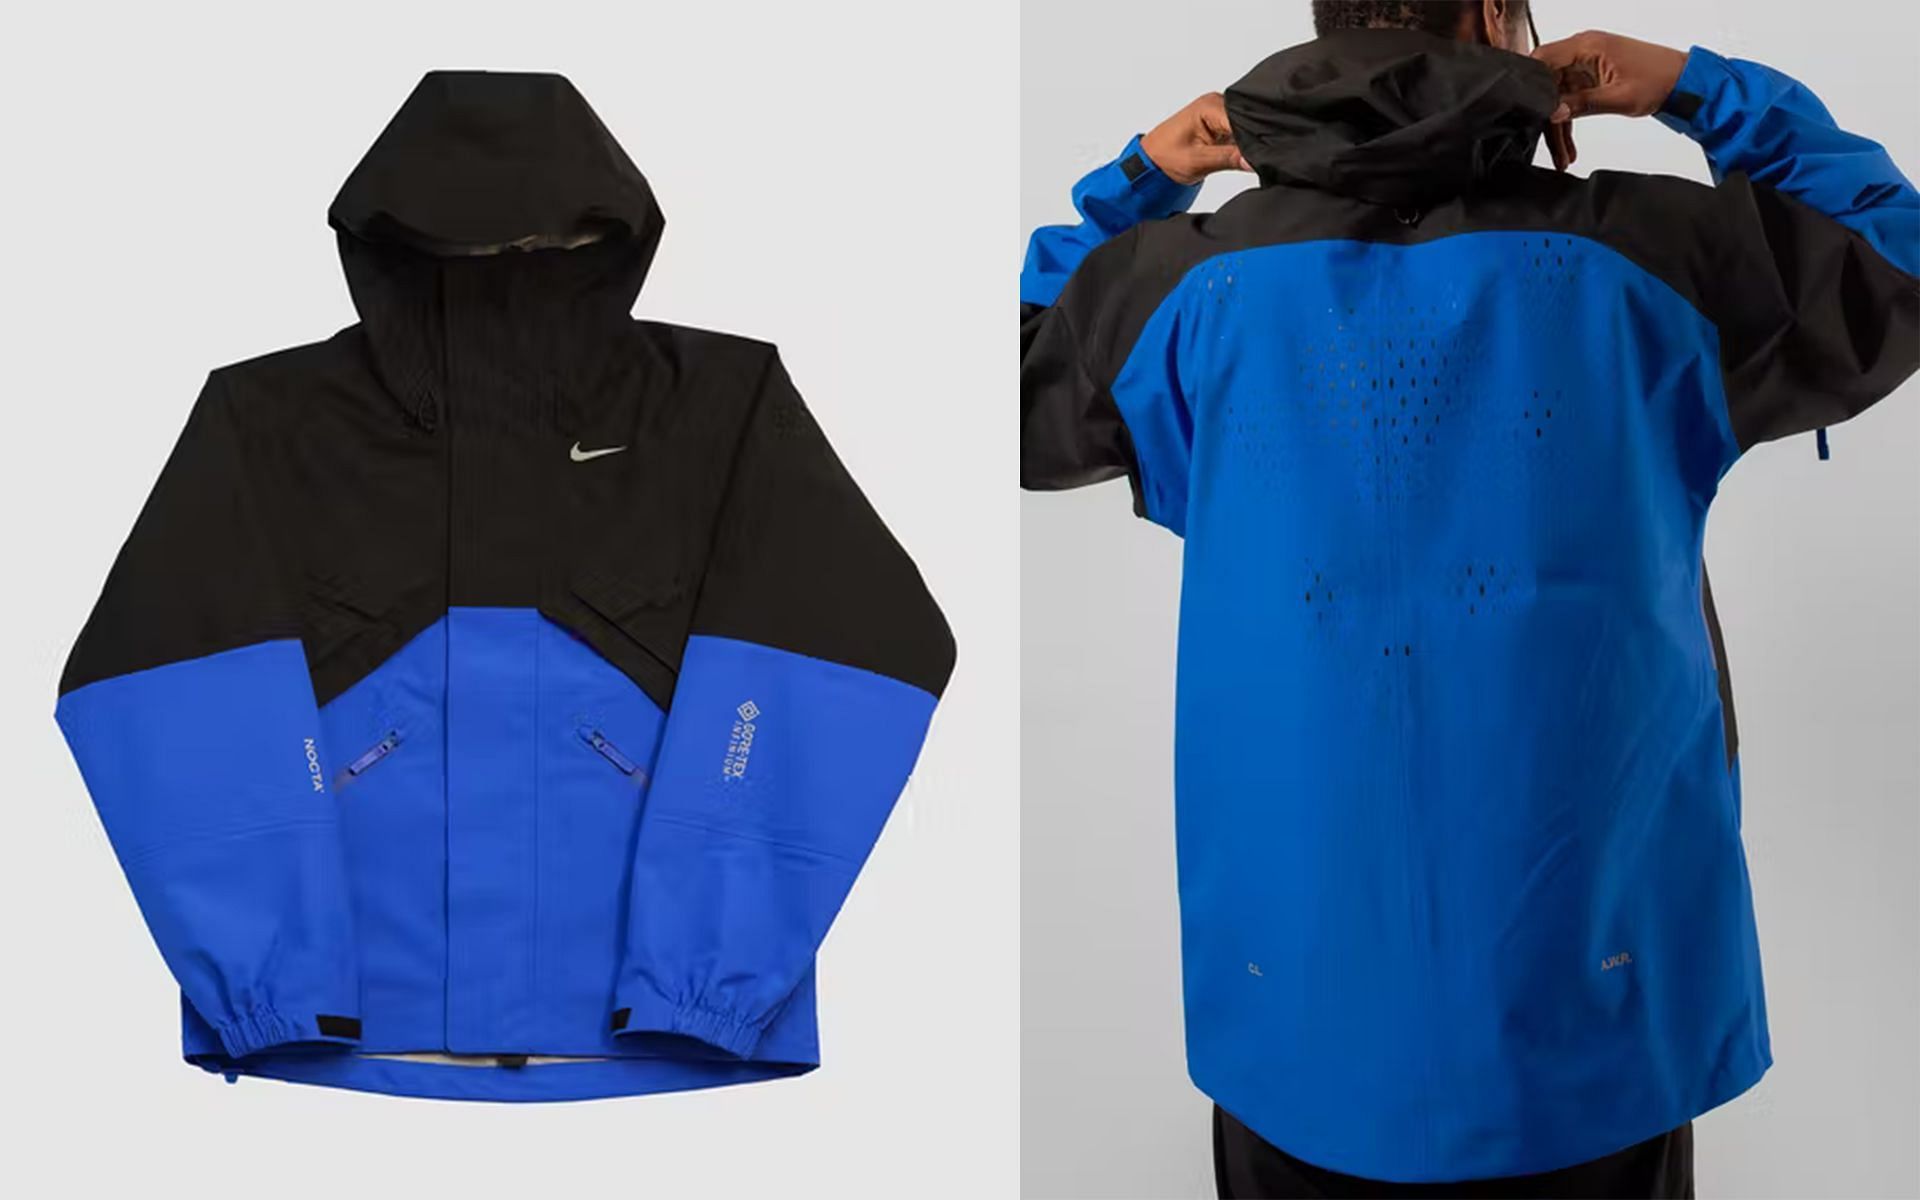 Top Boy x Nike NOCTA Alien Gortex jacket (Image via netflix.shop)